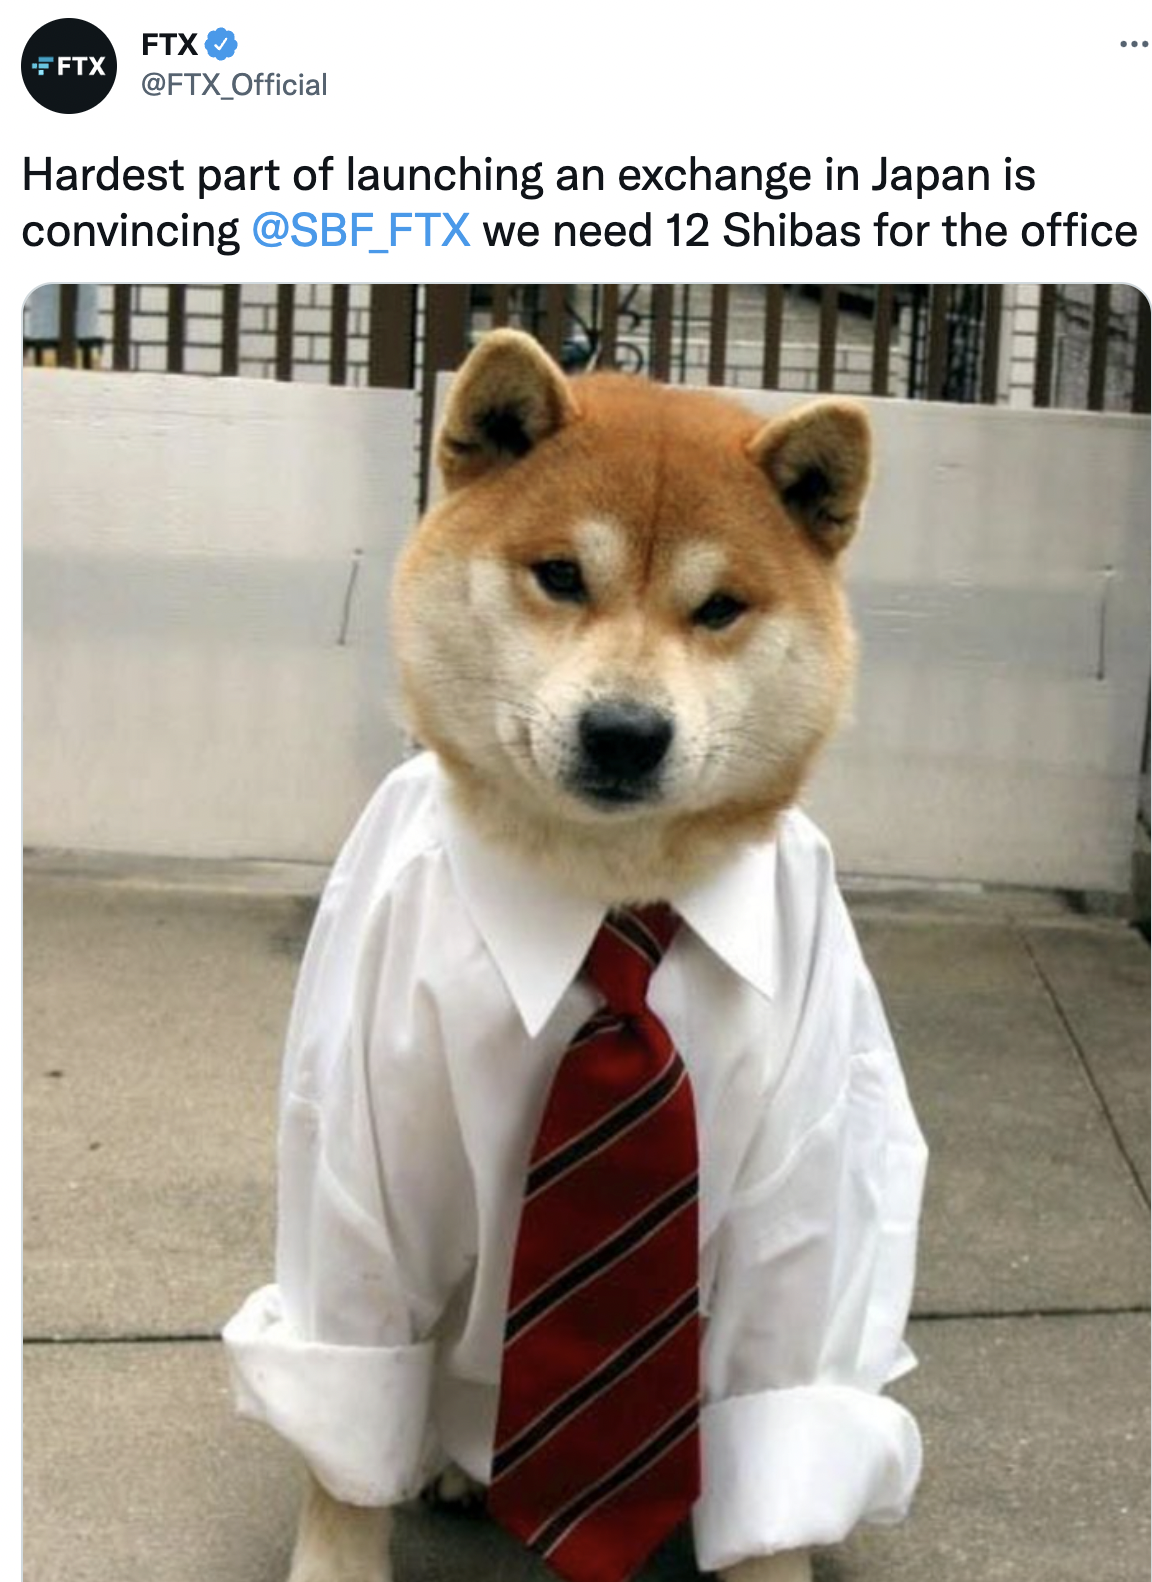 Investiția Shiba pentru biroul japonez luată în considerare de FTX